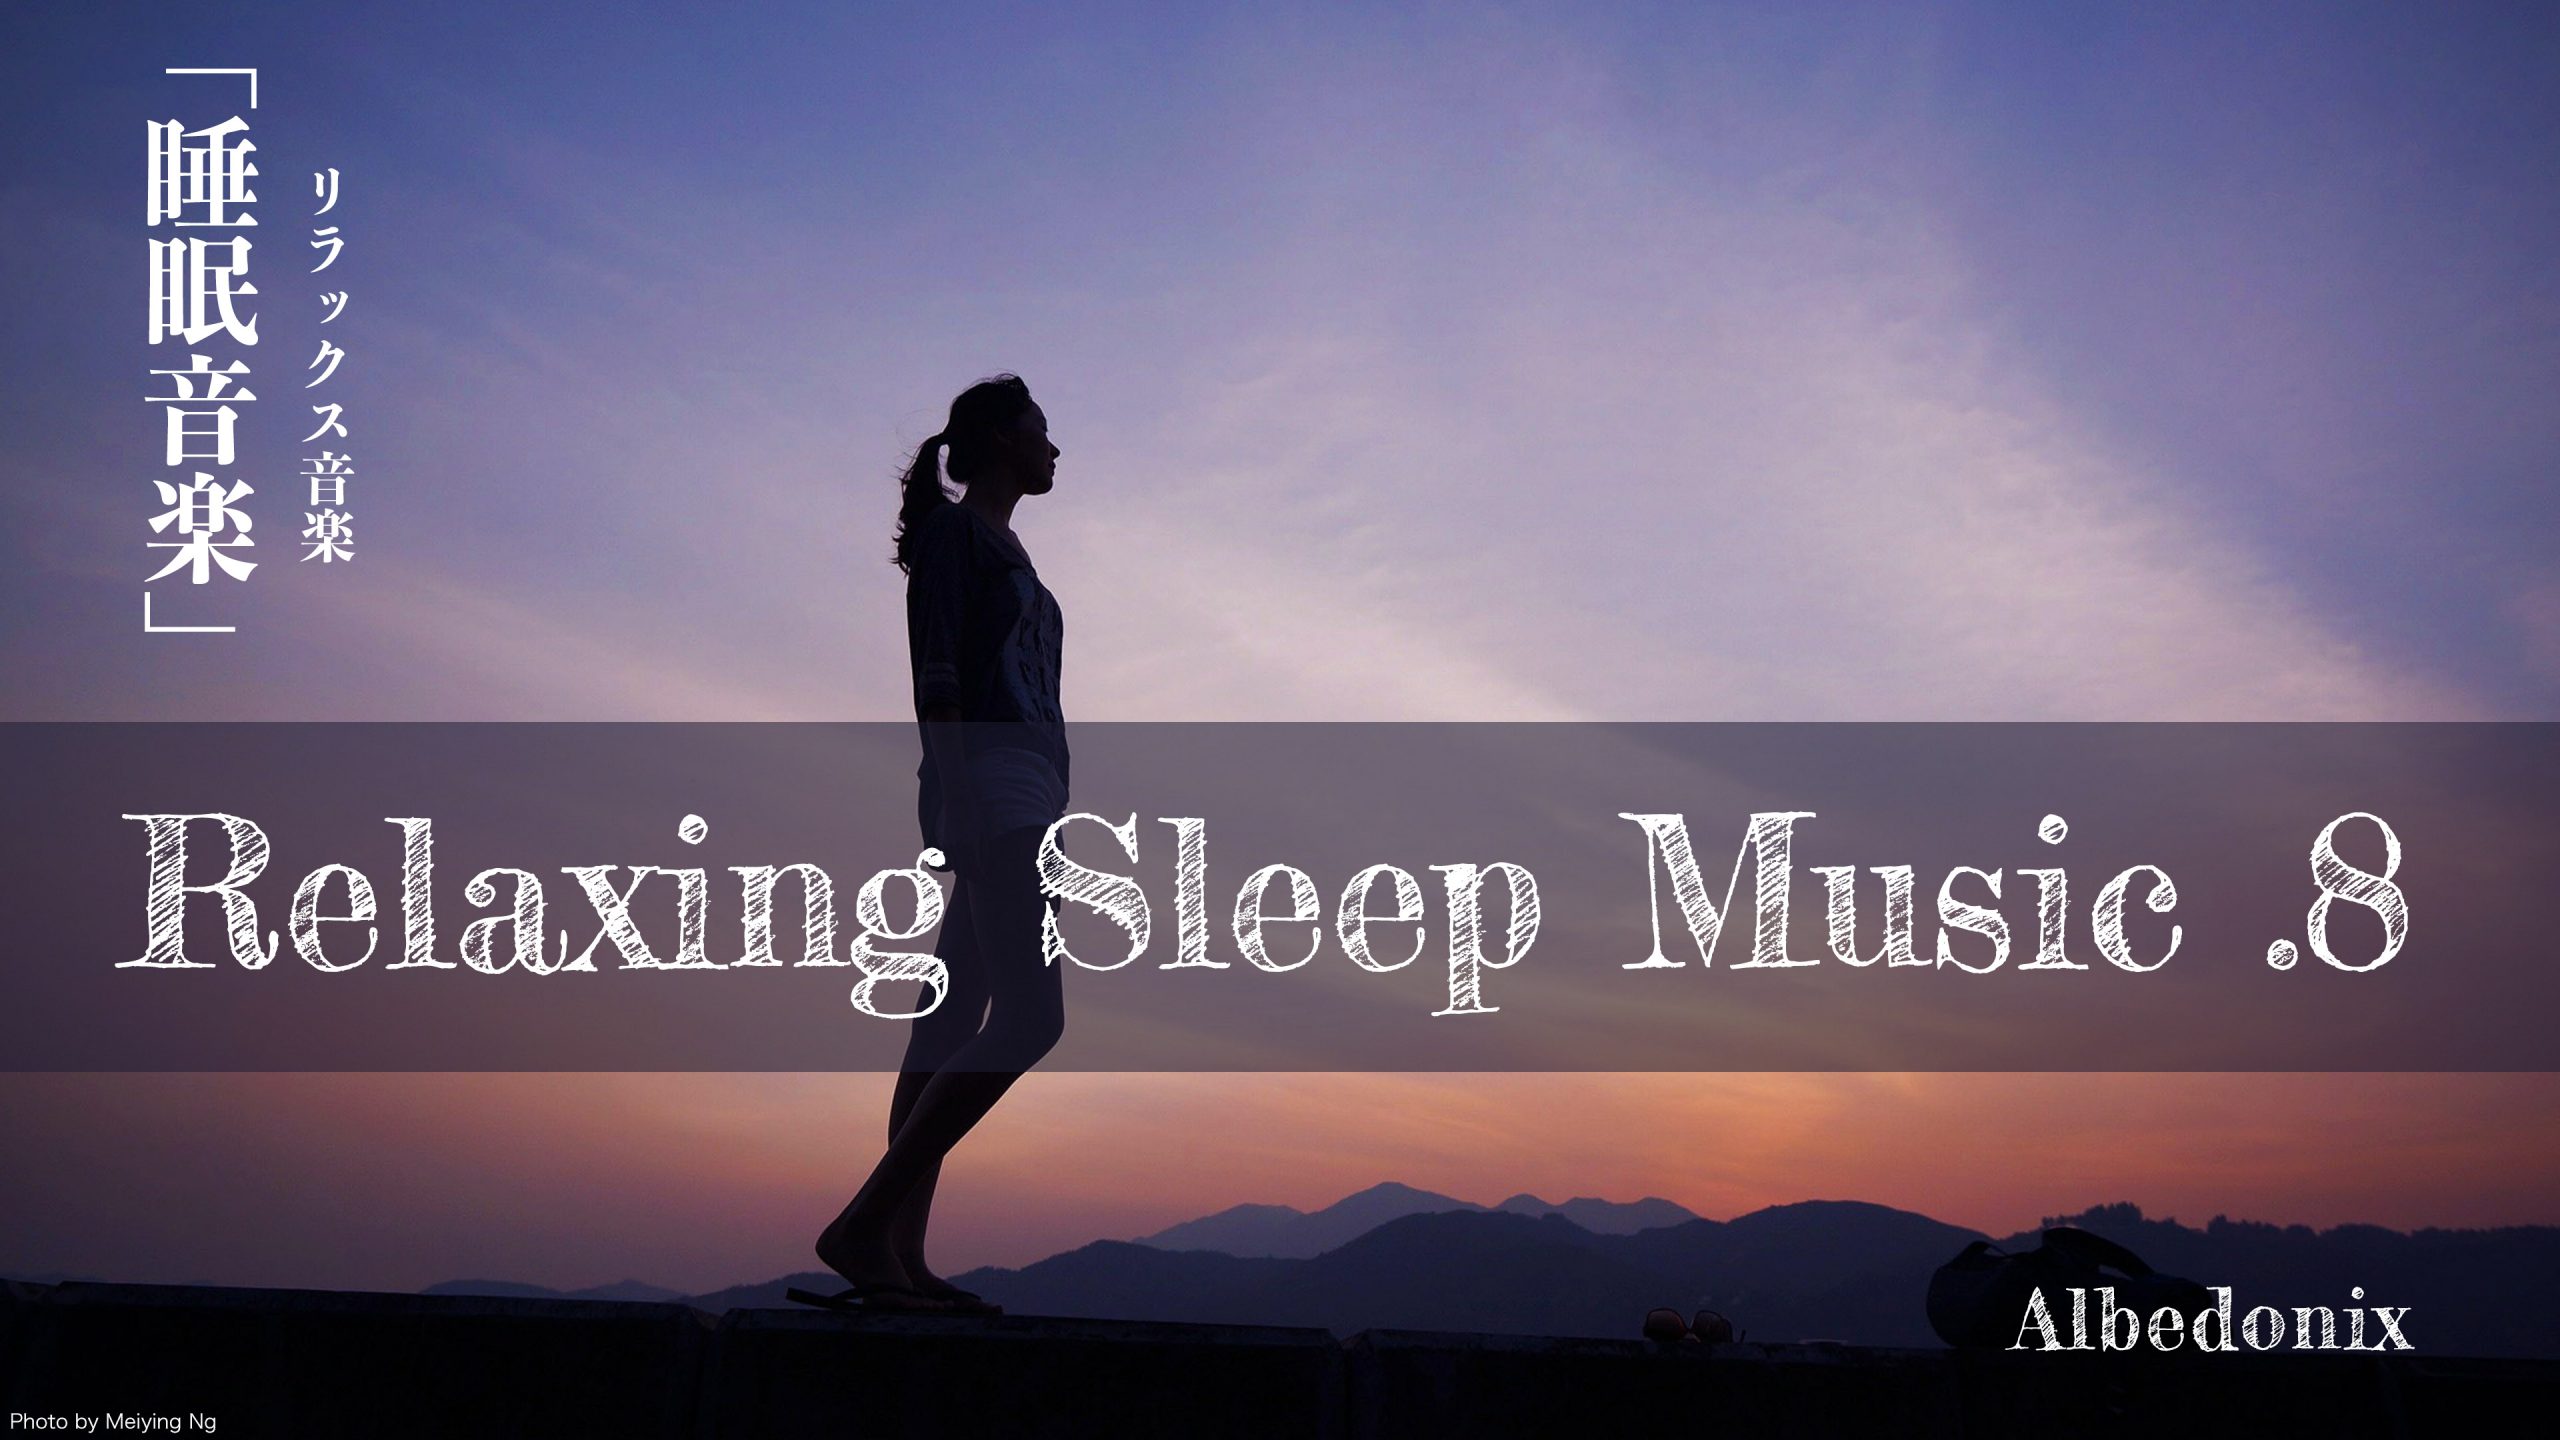 【睡眠】.8 リラックス音楽 睡眠導入、熟睡、BGM、勉強、集中 Albedonix